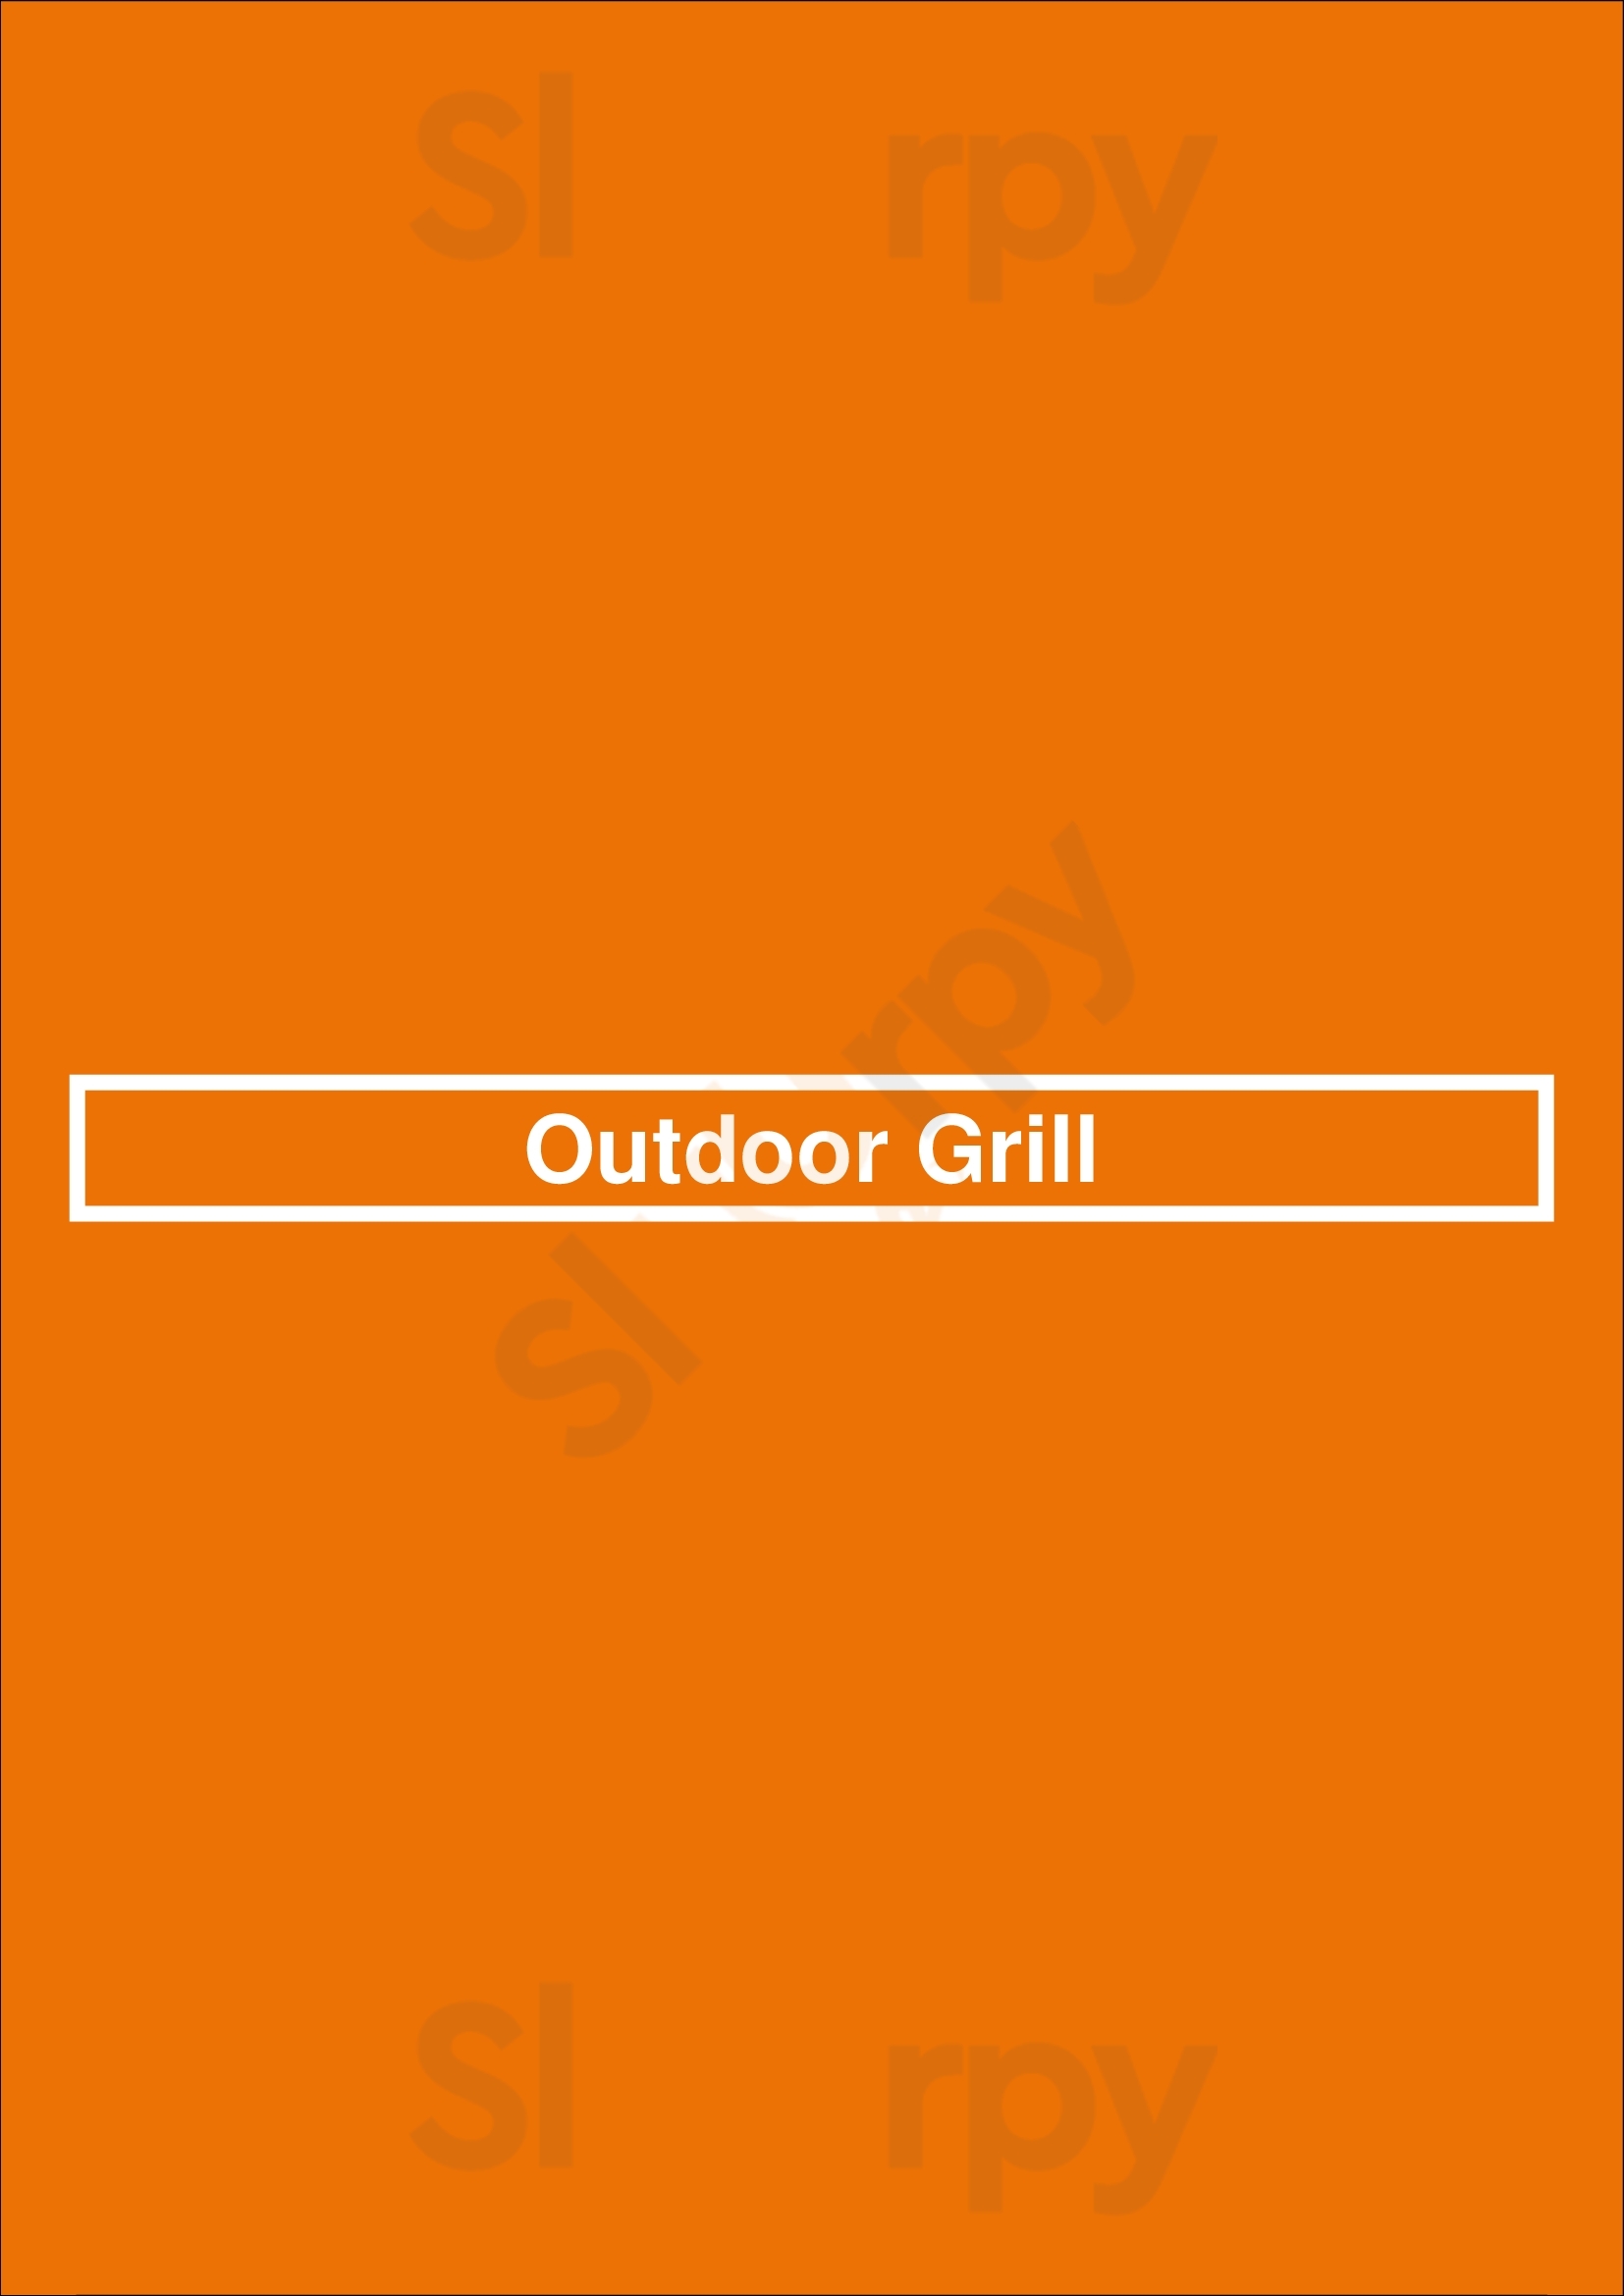 Outdoor Grill Los Angeles Menu - 1